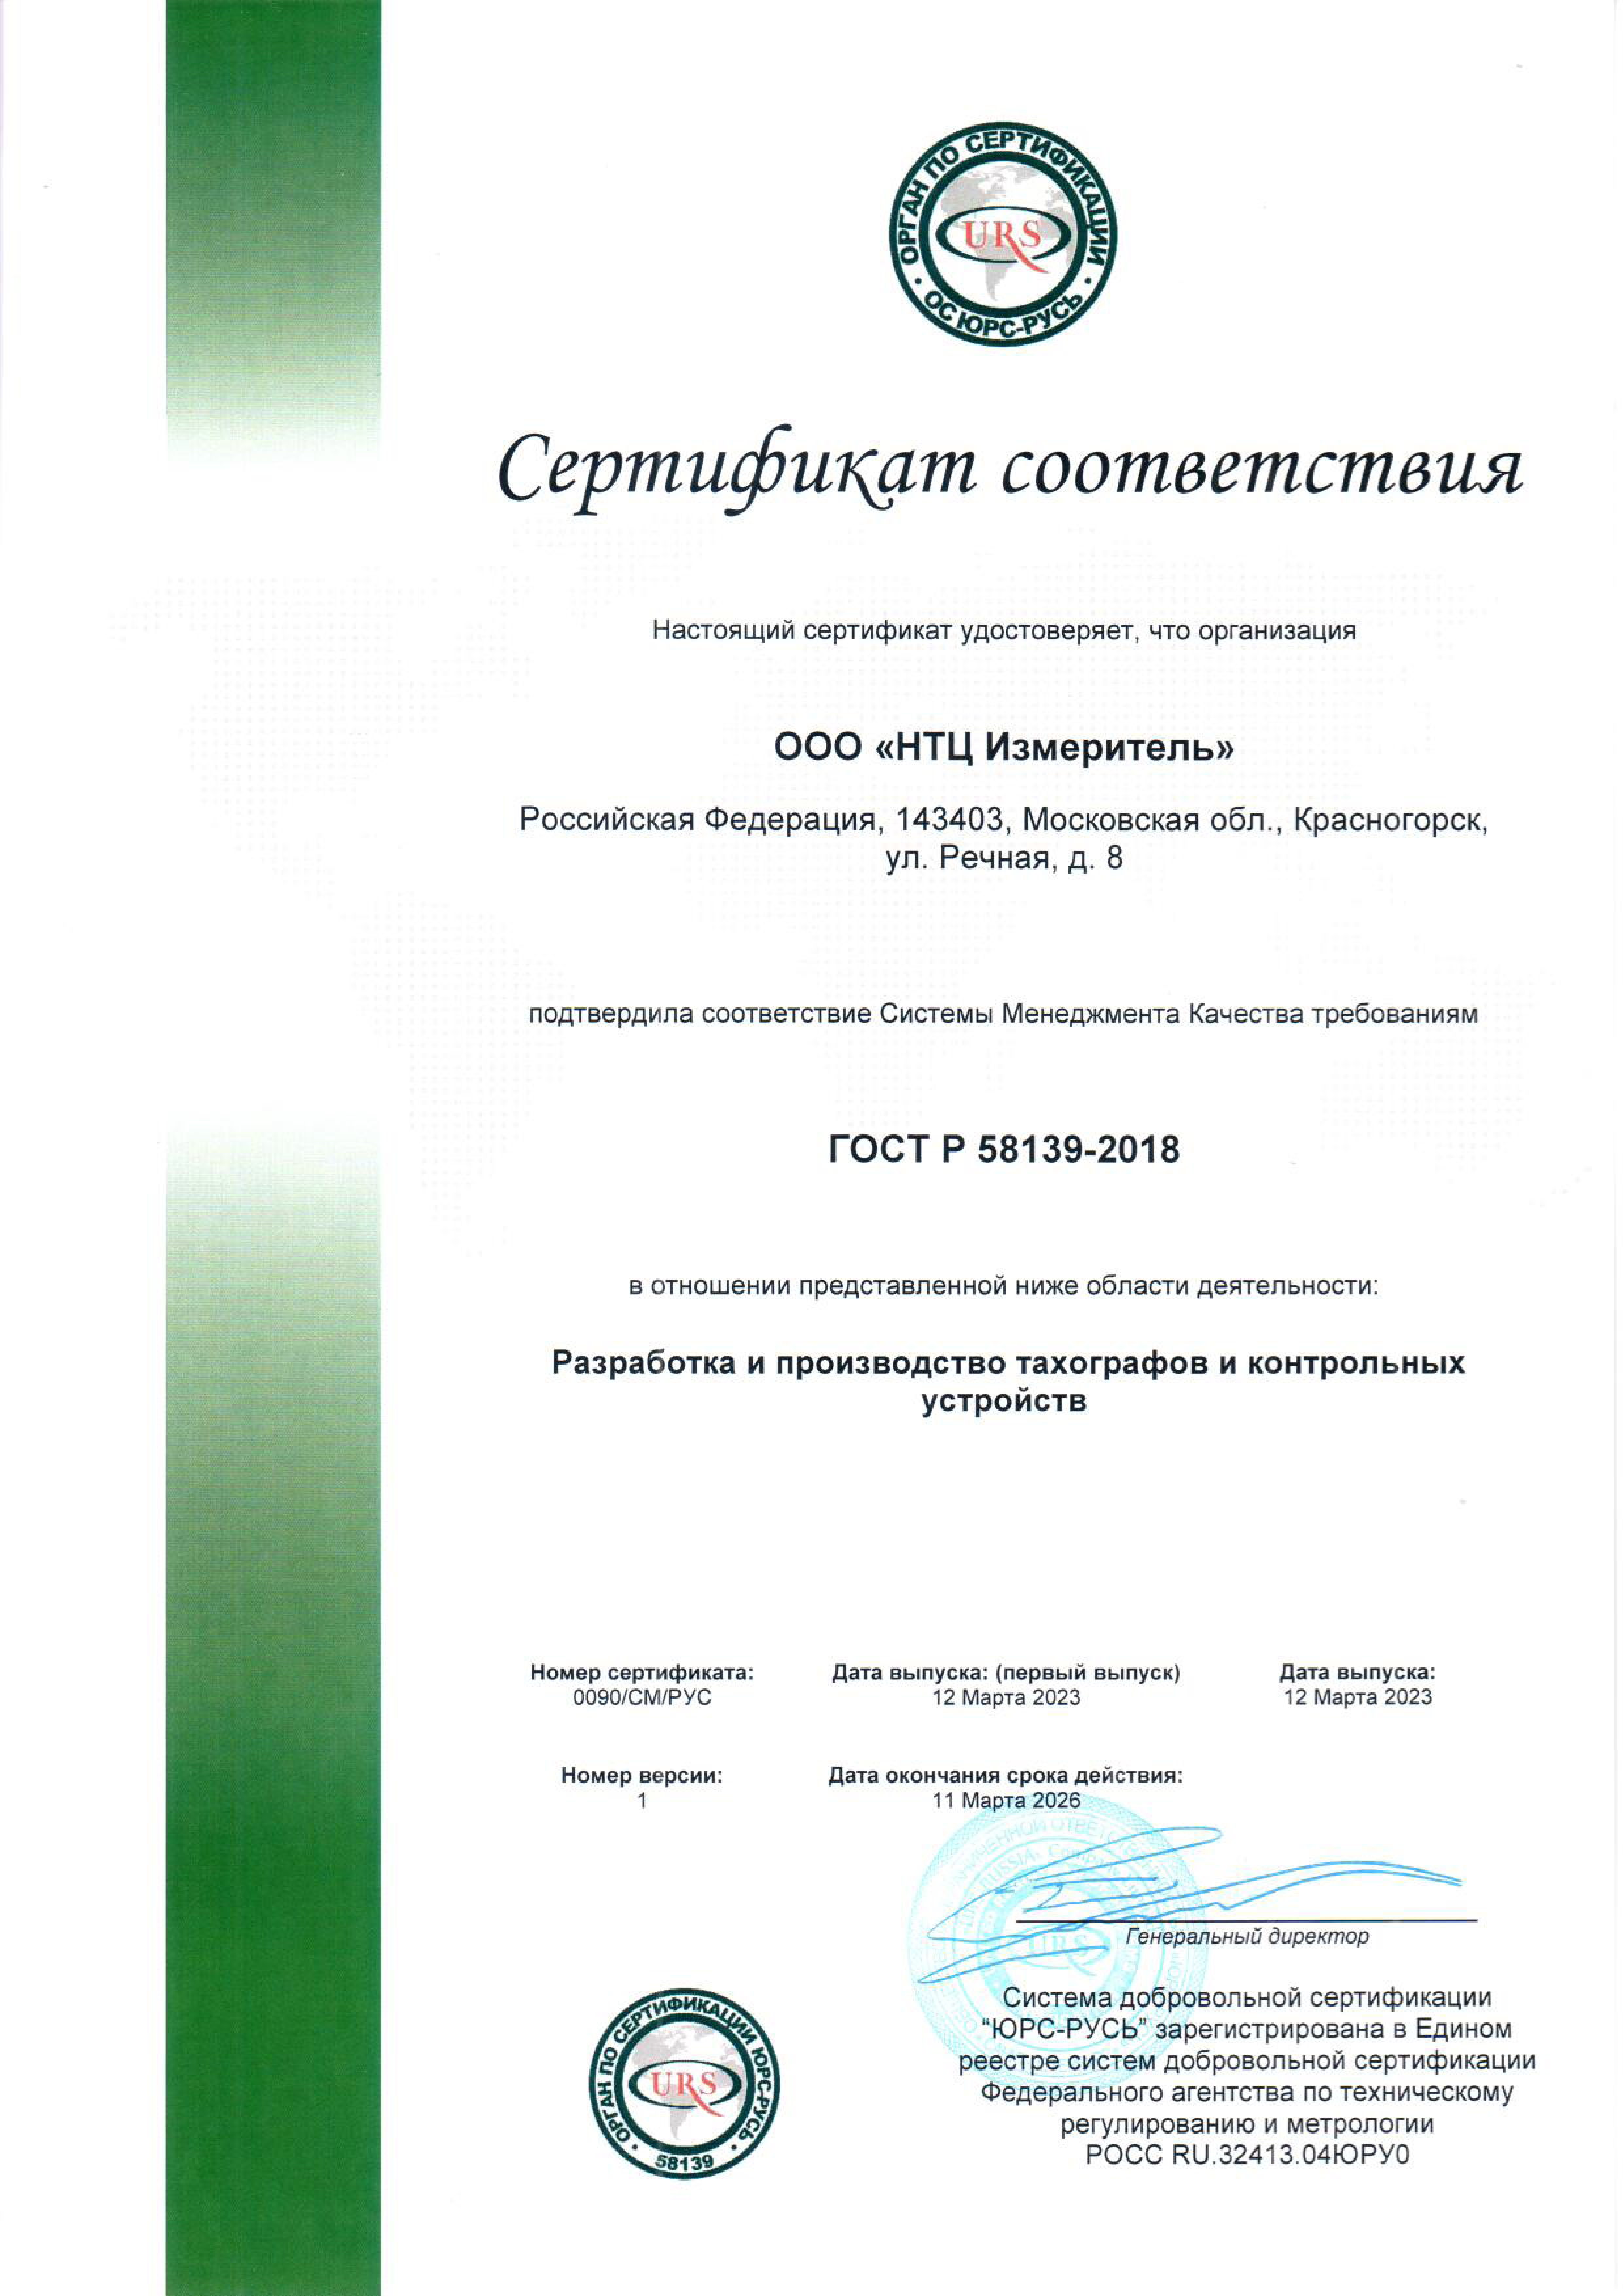 Сертификат соответствия системе менеджмента качества требованиям ГОСТ Р 58139-2018 Разработка и производство тахографов и контрольных устройств